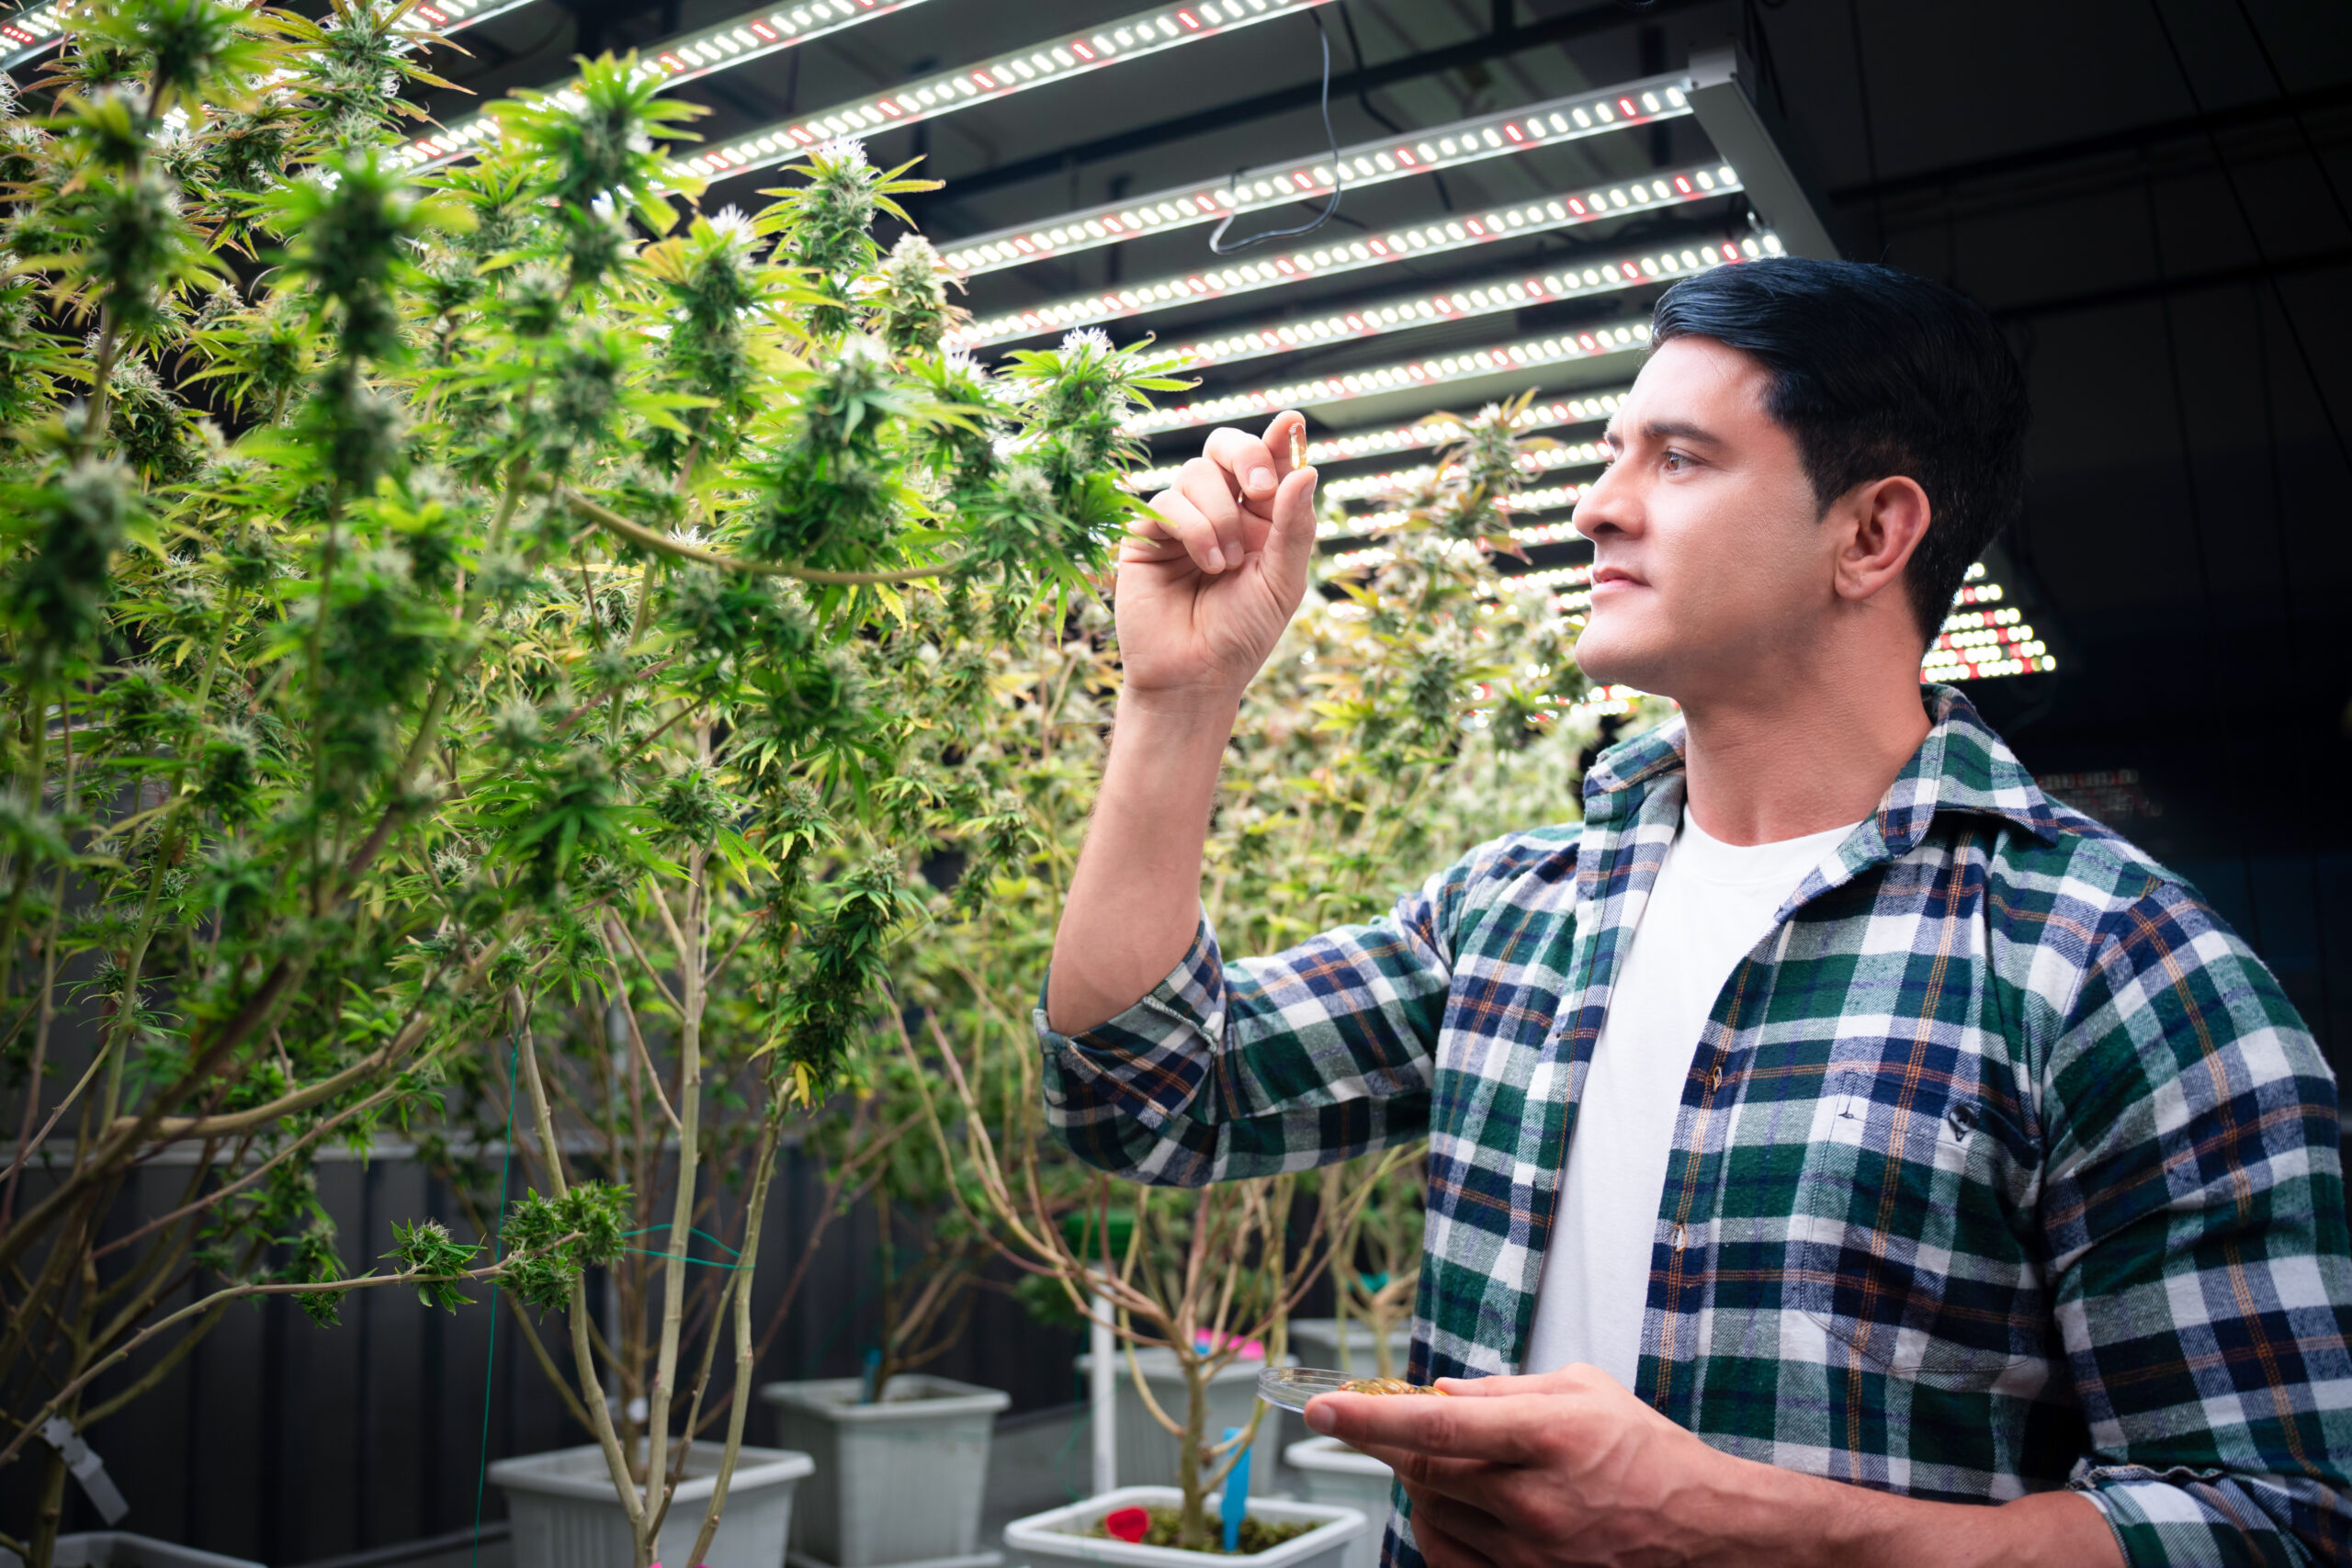 Businessman inspects cannabis crop.